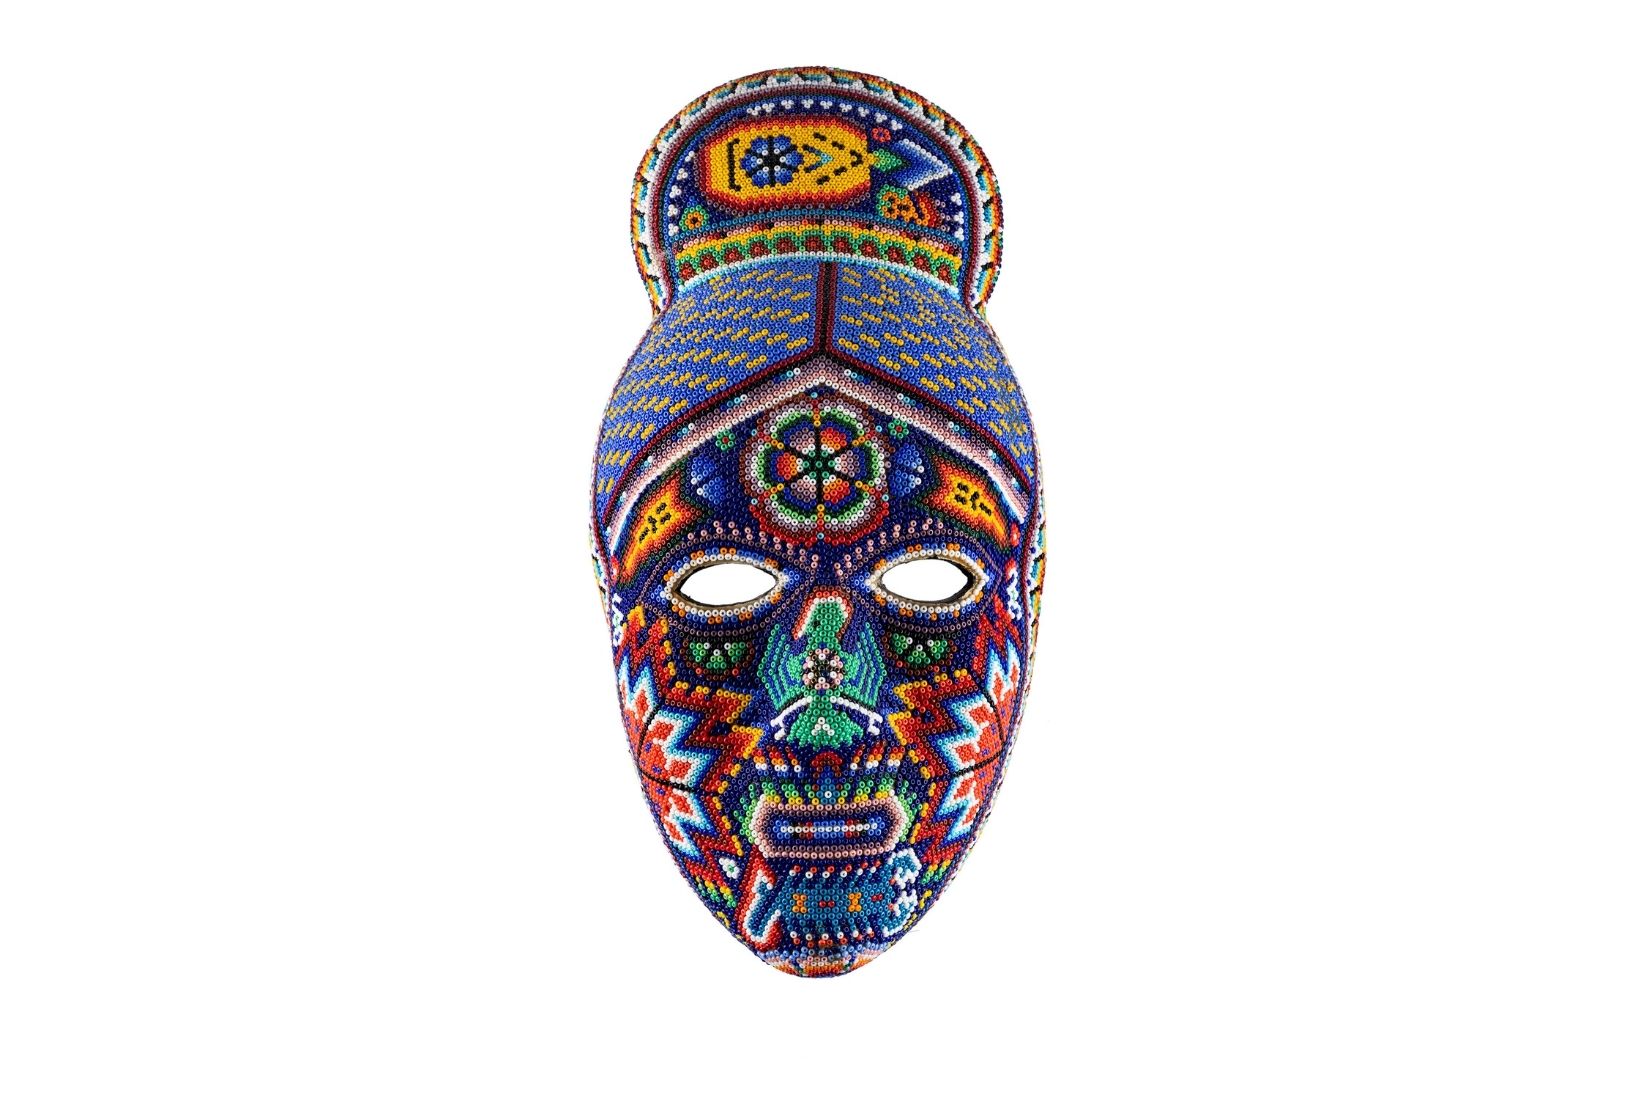 Máscara huichola de madera con chaquira pegada con cera de Campeche. Artesano desconocido. Nayarit. Col. Abruch. (Foto: GLR Estudio).